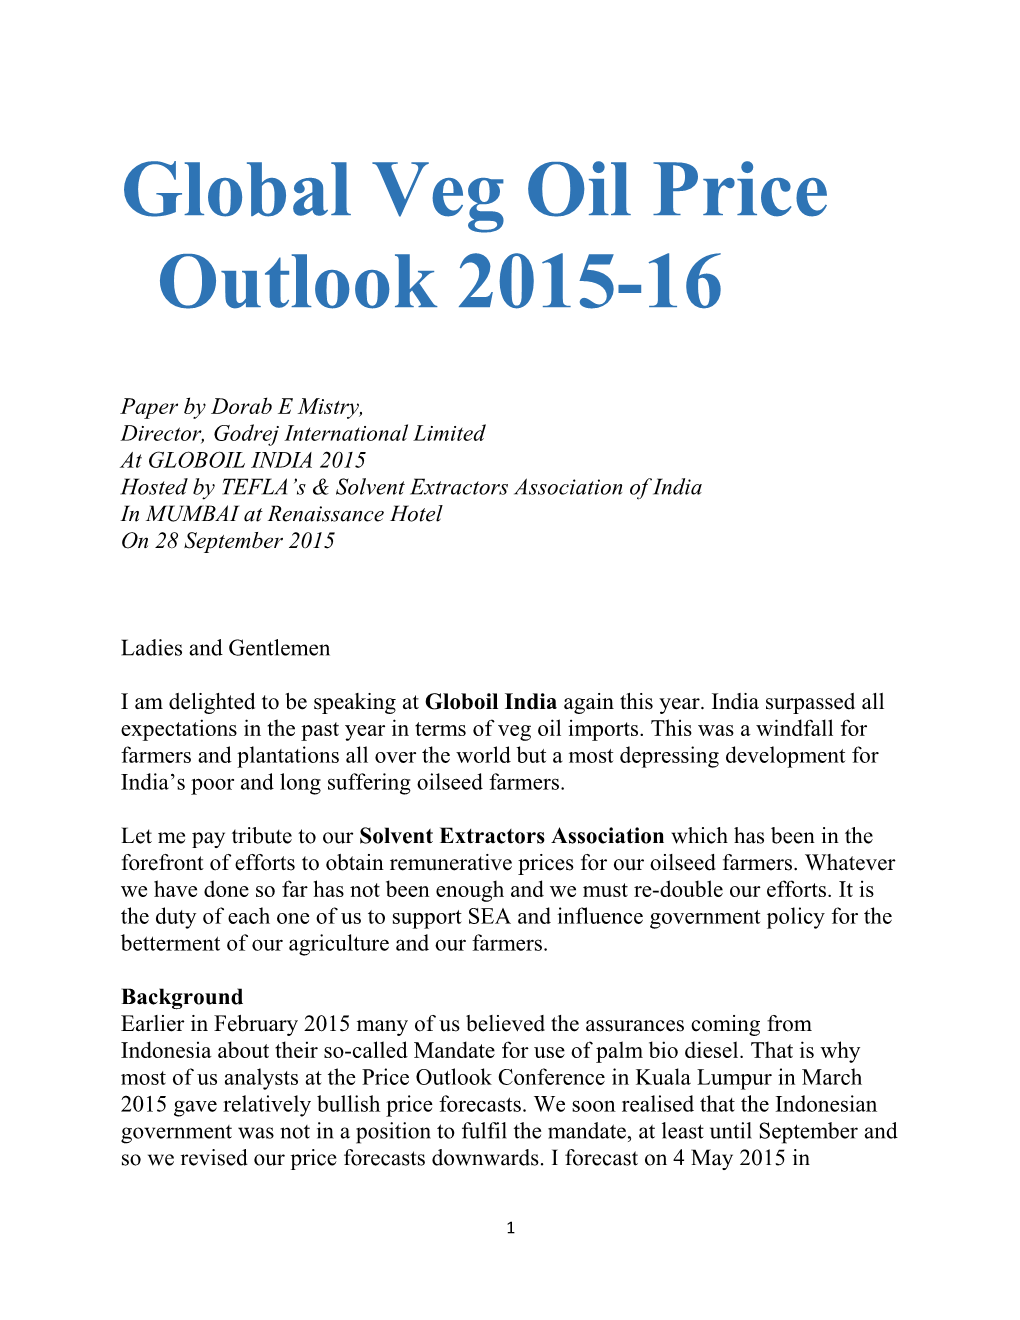 Global Veg Oil Price Outlook 2015-16